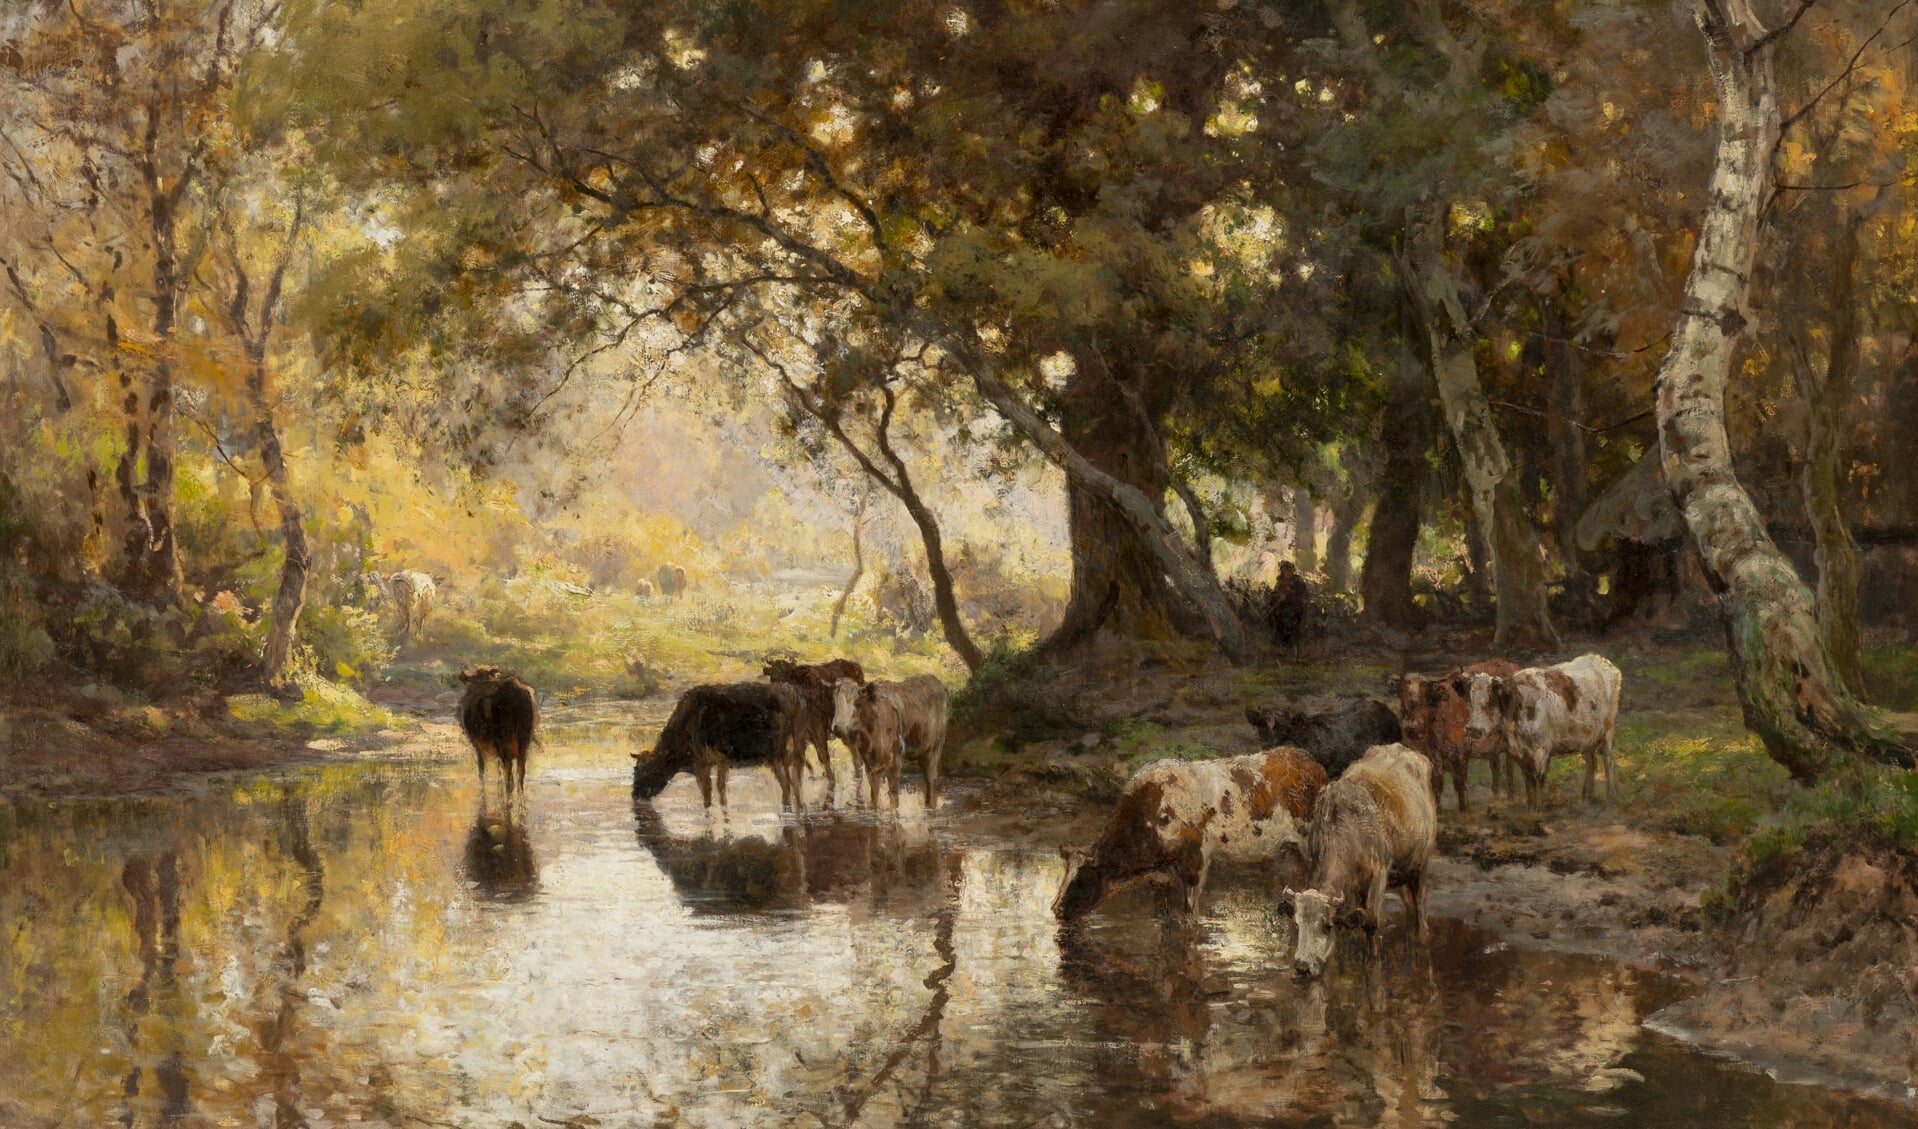  'Koeien aan de waterkant' van de Haagse schilder Julius van Sande Bakhuyzen (1835-1925). (Foto: JAV Studio's)